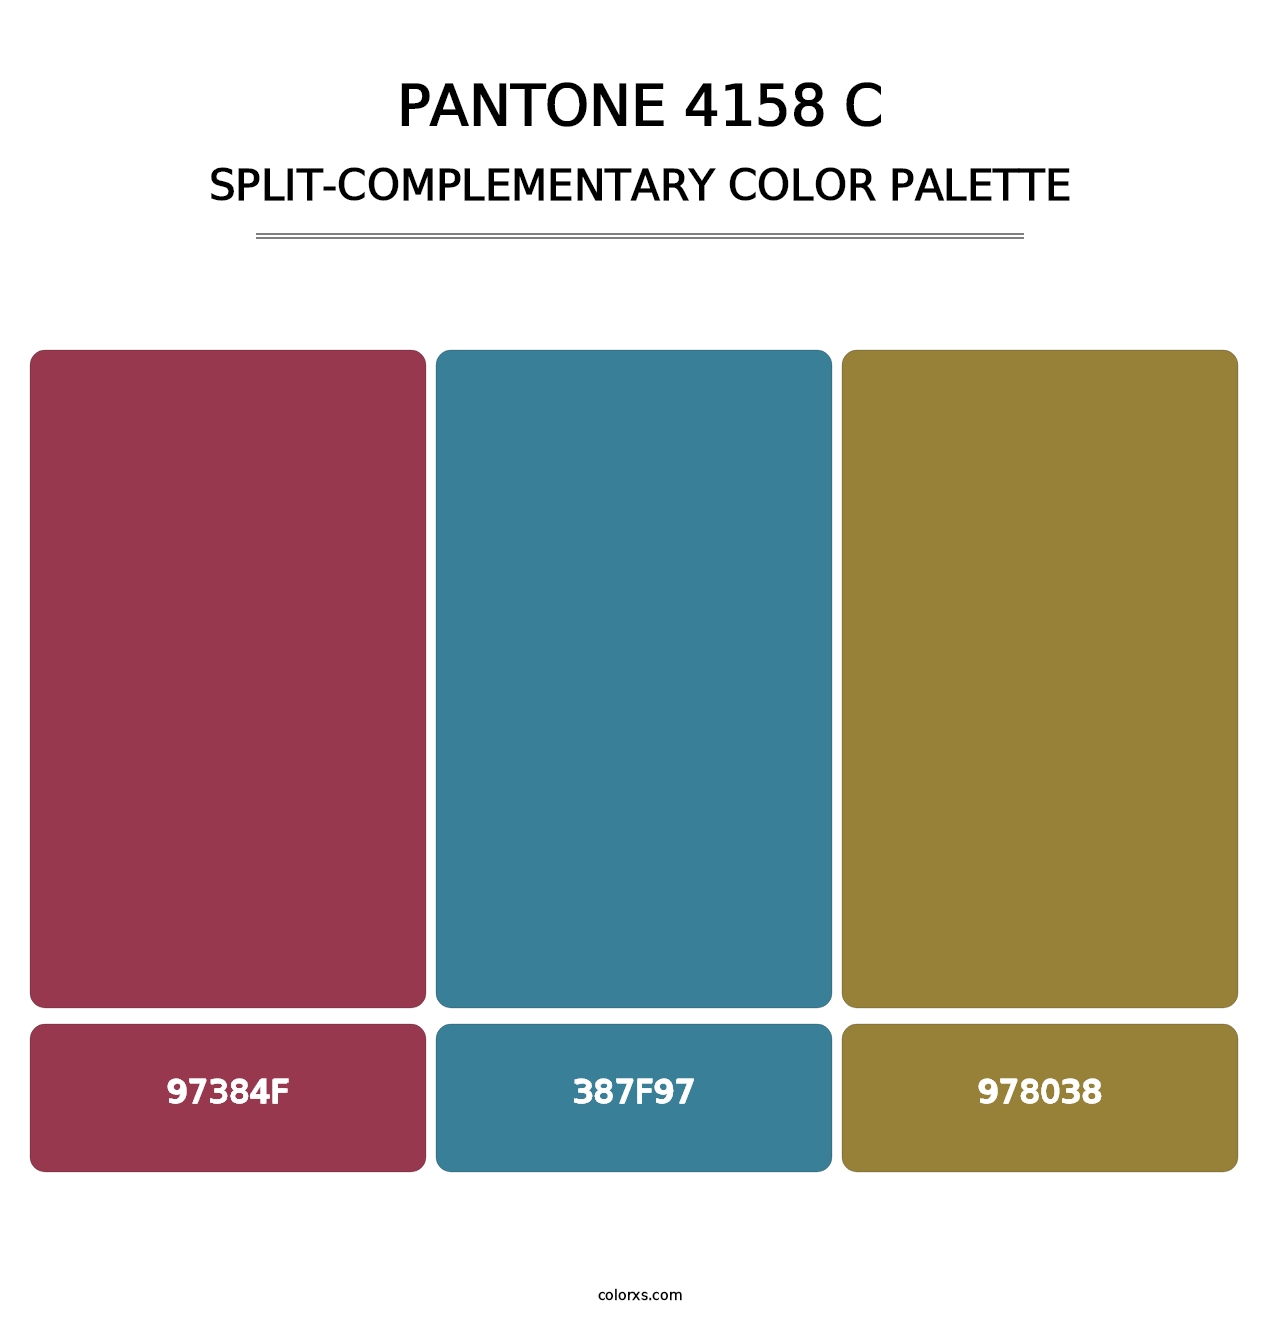 PANTONE 4158 C - Split-Complementary Color Palette